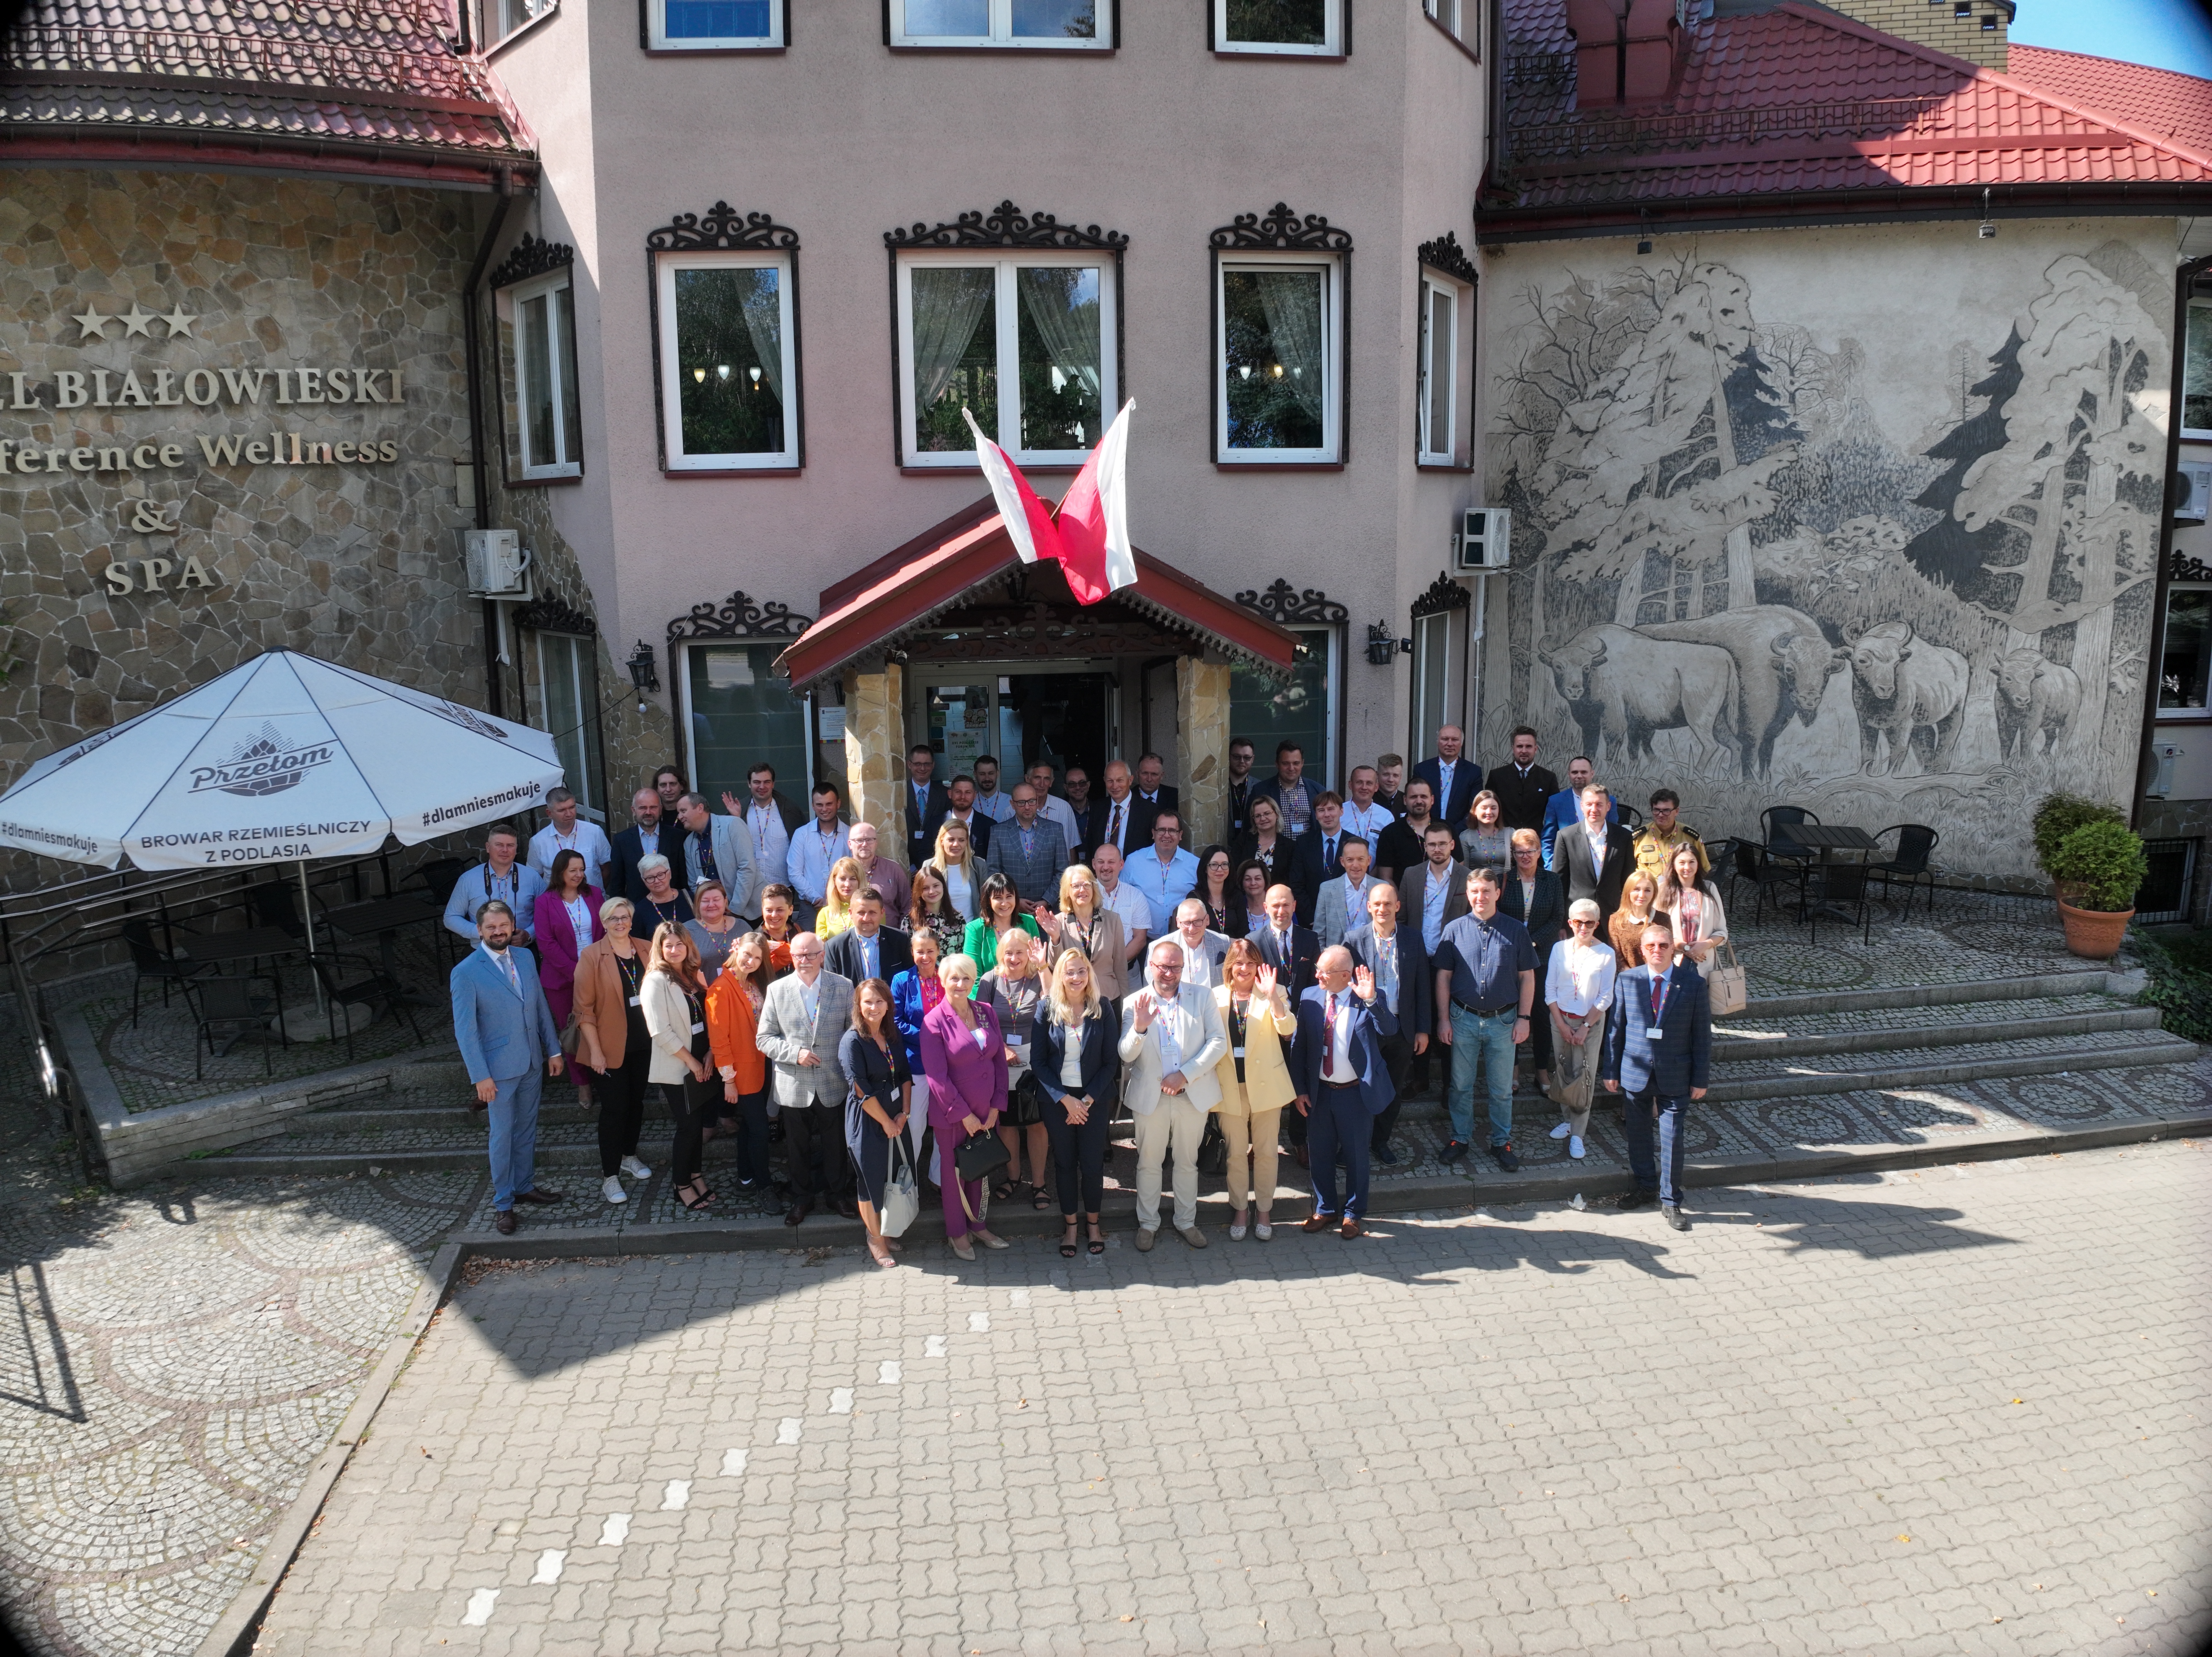 Zdjęcie grupowe przed hotelem Białowieskim uczestników konferencji.